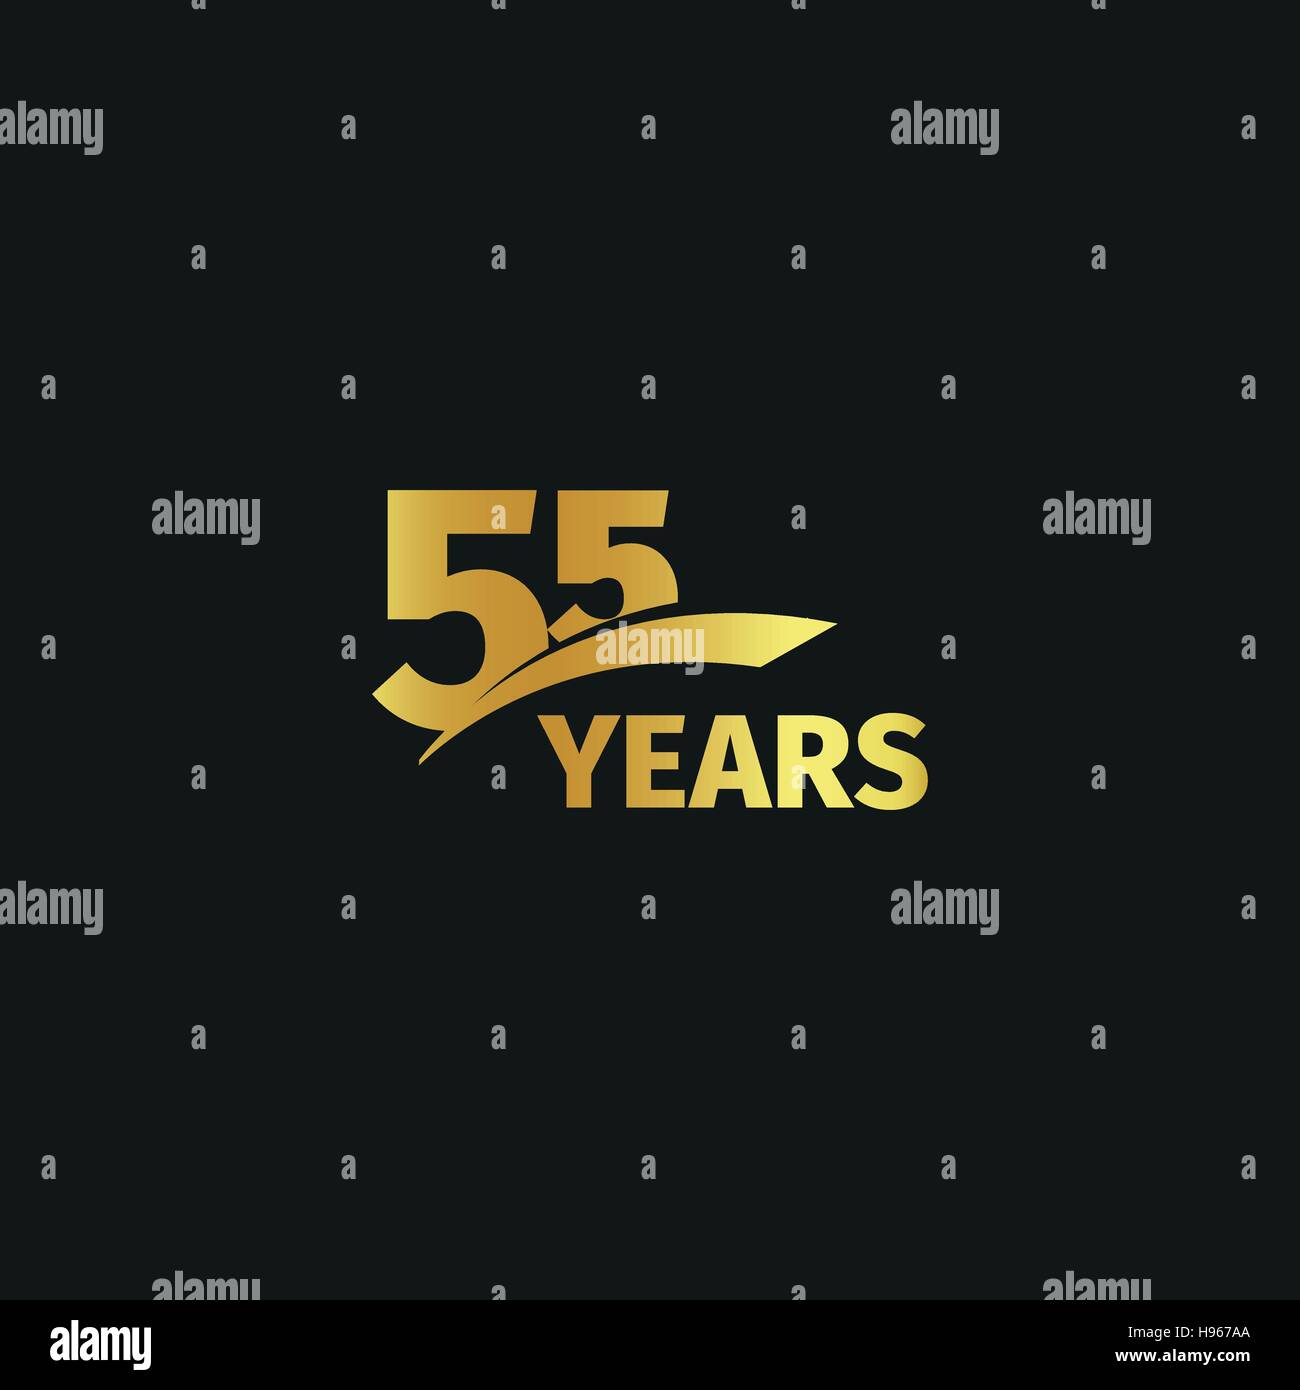 Abstract golden 55th Jahrestag Logo auf schwarzem Hintergrund isoliert. die Nummer 55 Schriftzug. Fünfundfünfzig Jahre Jubiläum Feier Symbol. Geburtstag-Emblem. Vektor-Illustration. Stock Vektor